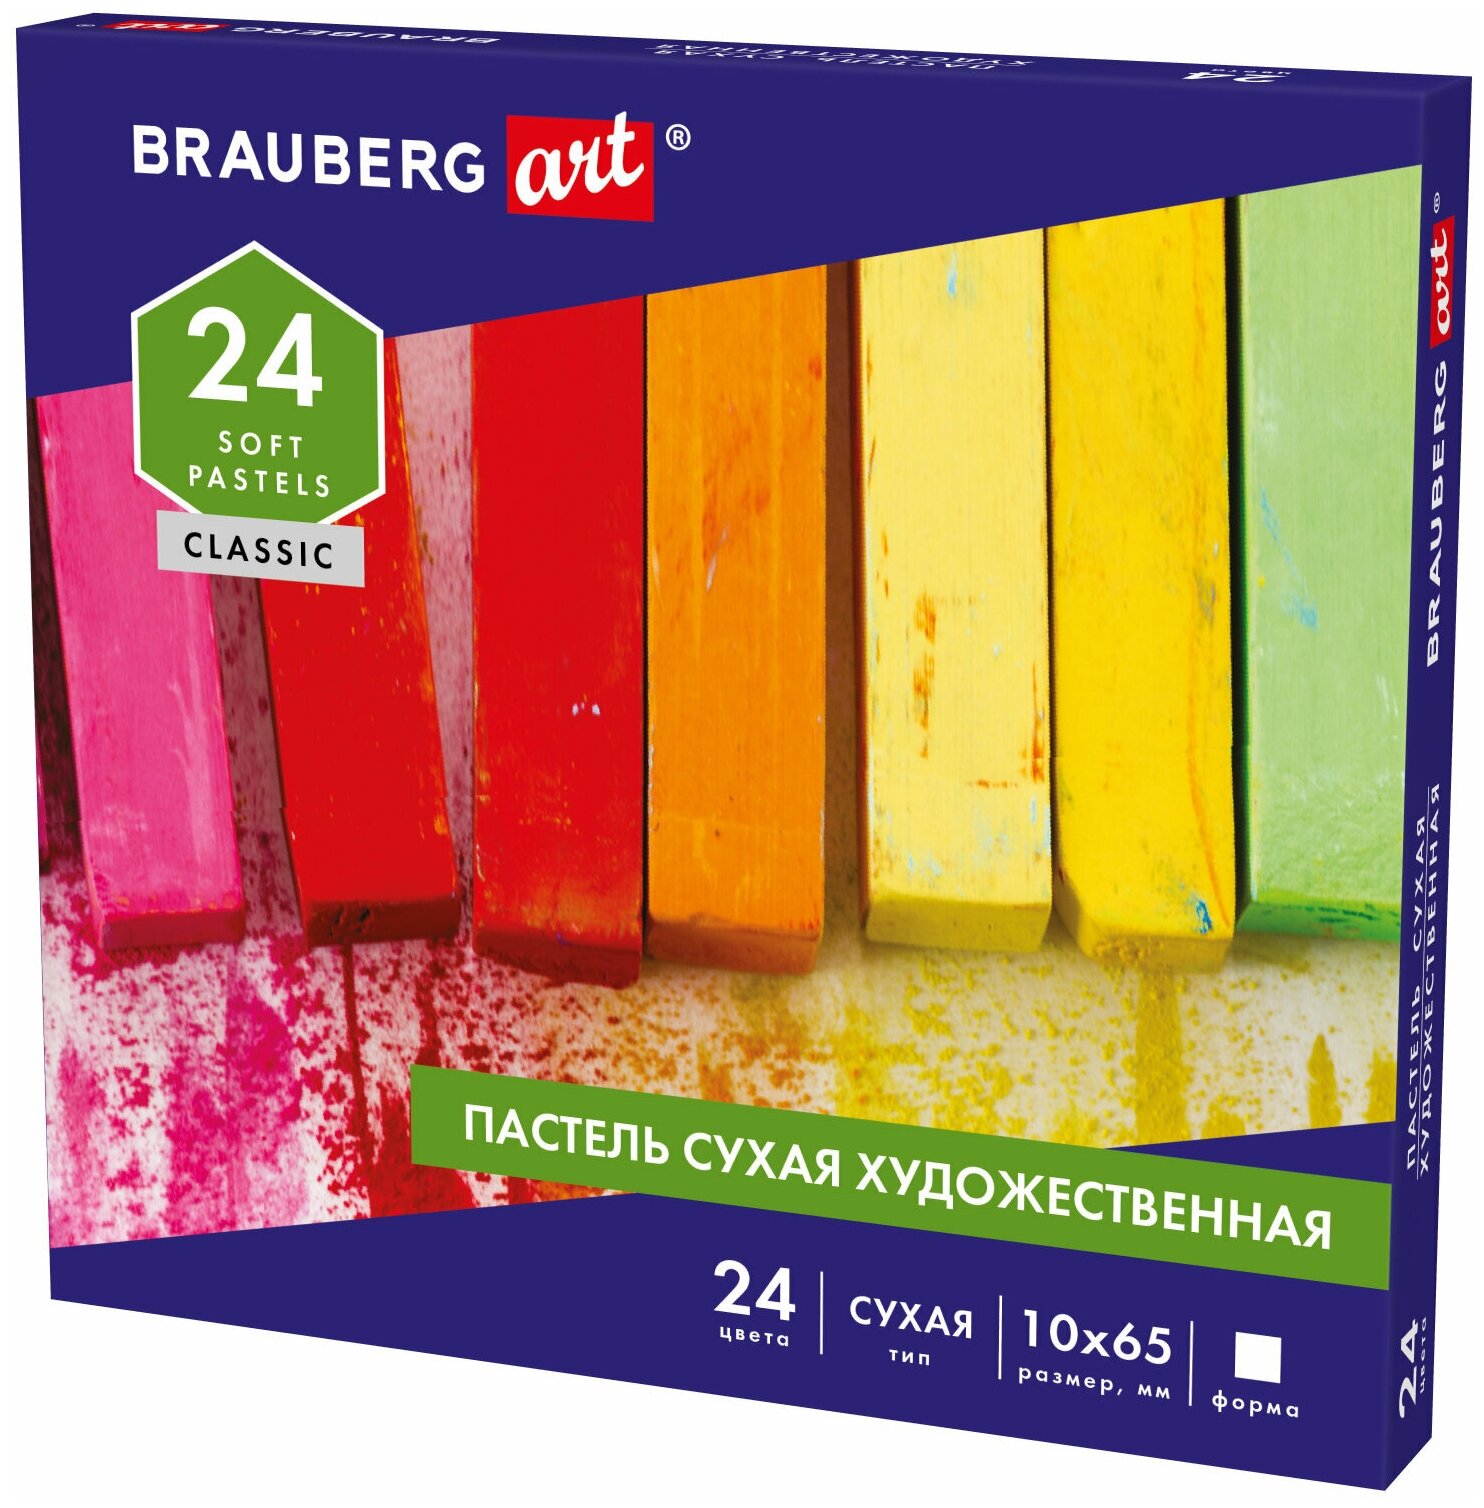 Пастель сухая художественная для рисования Brauberg Art Classic, 24 цвета, квадратное сечение